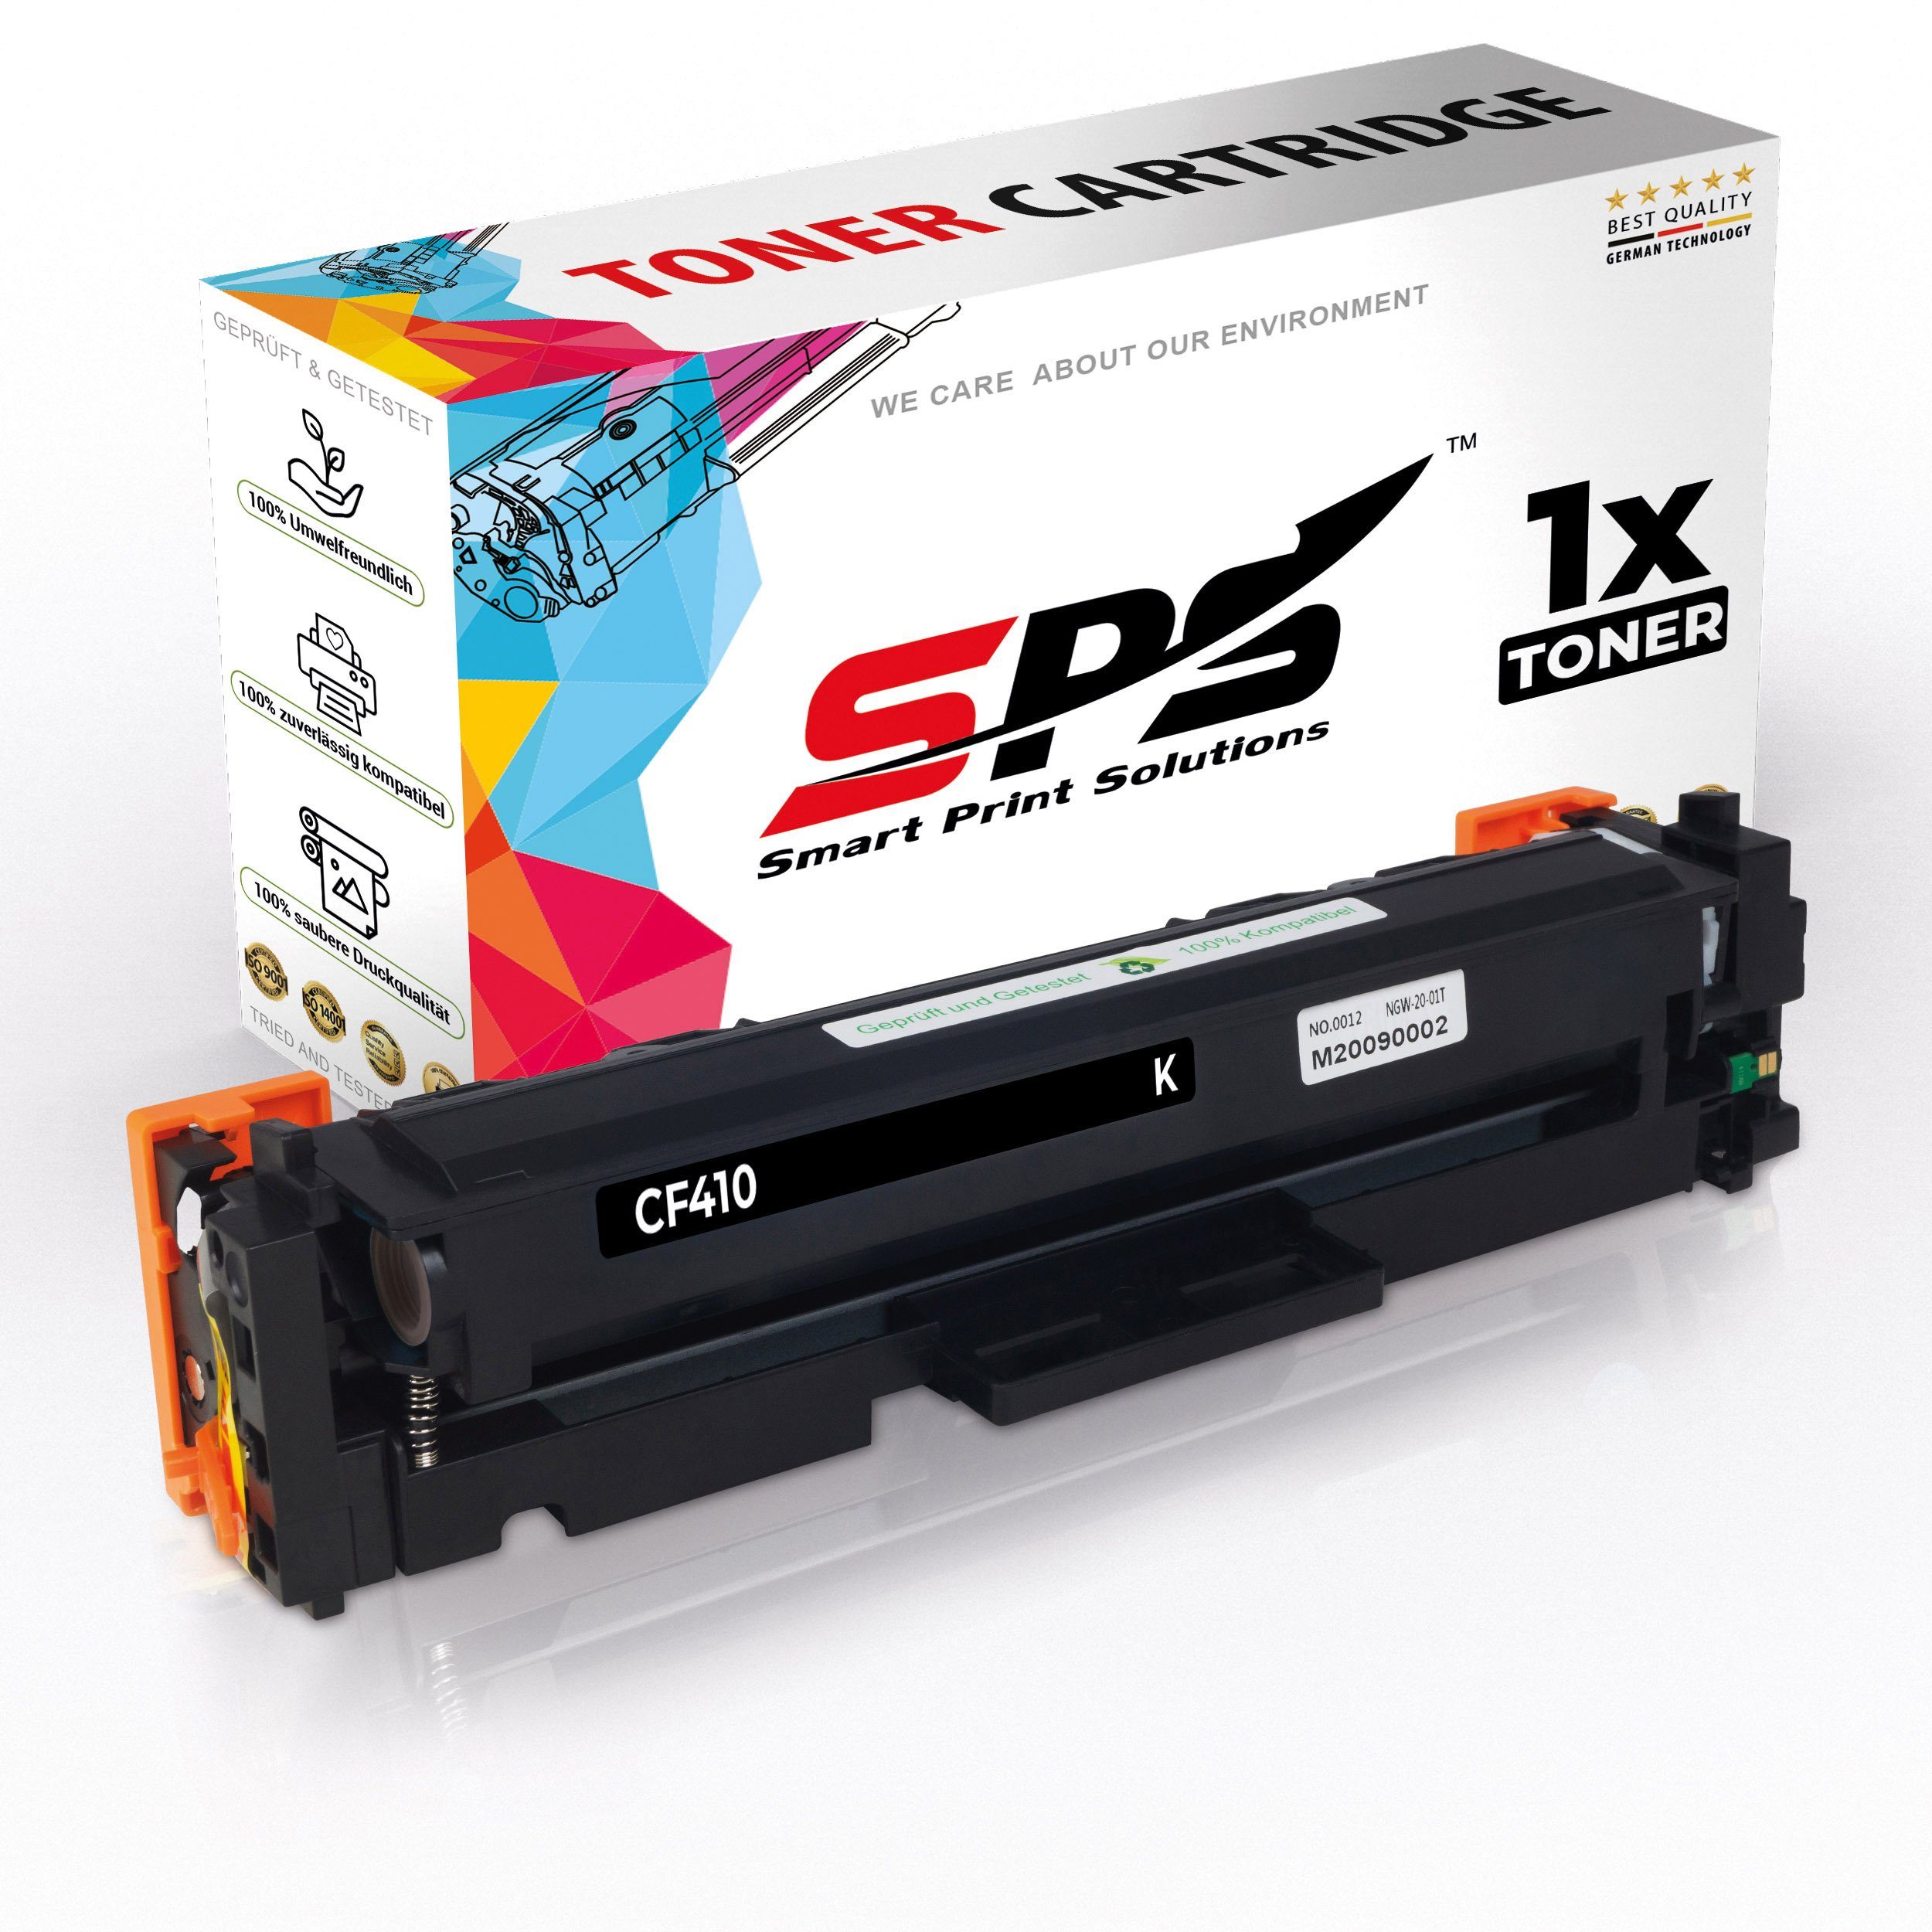 Pro (1er Pack) Color M452 SPS HP Tonerkartusche Laserjet Kompatibel 410A, für